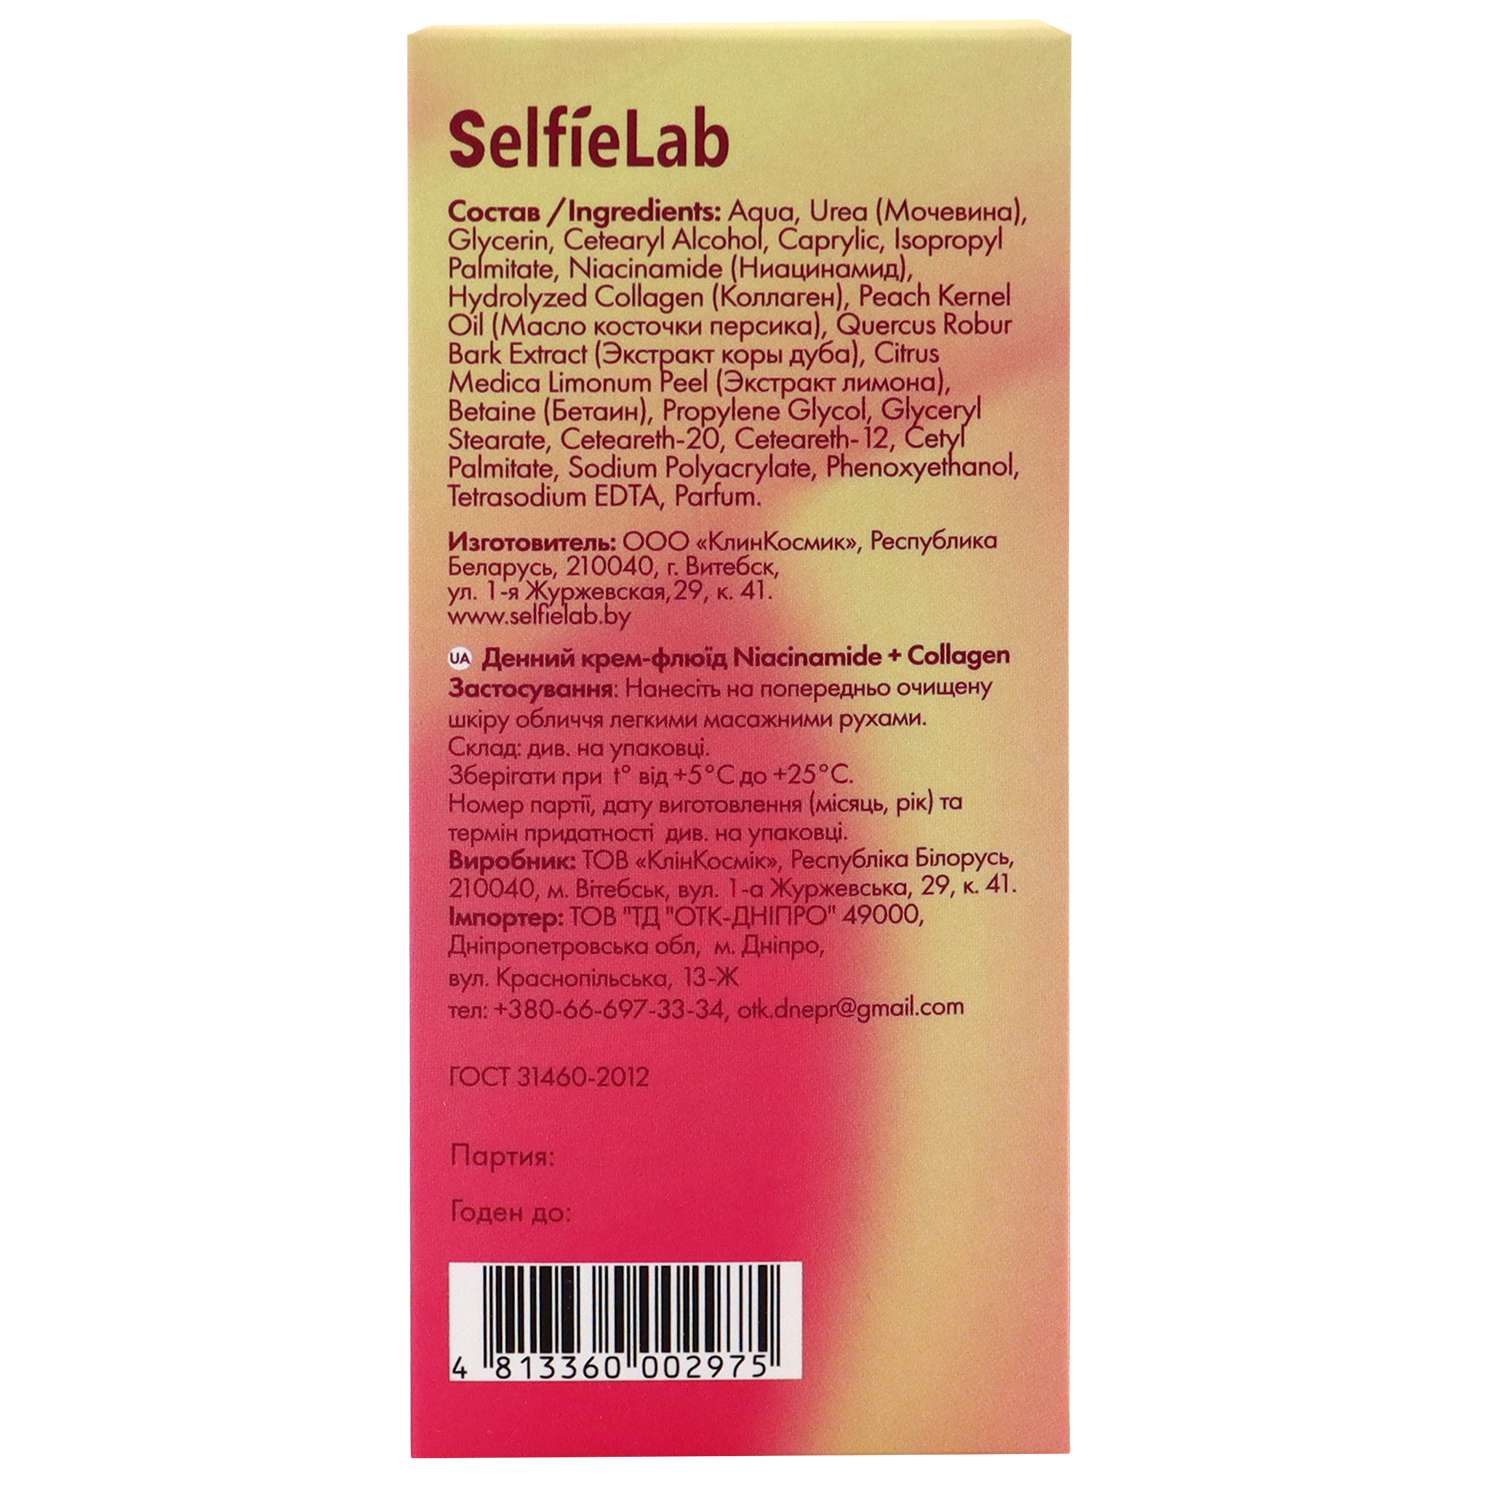 Дневной крем-флюид SelfieLab Niacinamide + Collagen 50 г - фото 2